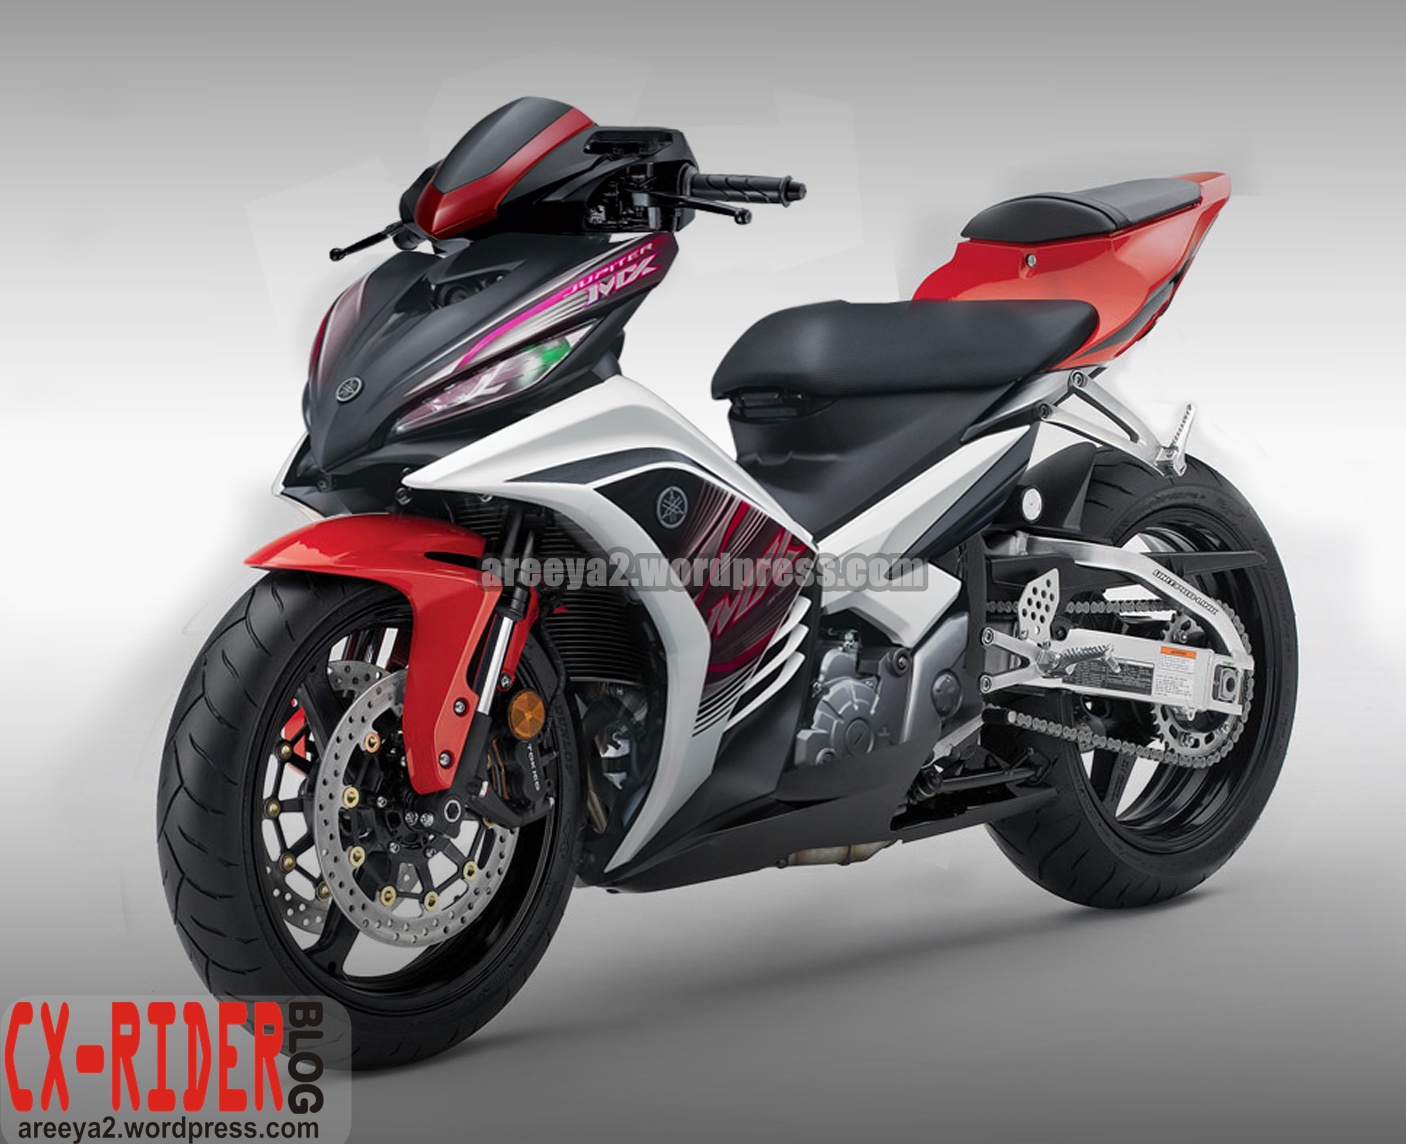 Foto Gambar Modifikasi Motor Yamaha Jupiter MX Tampilan Kontes